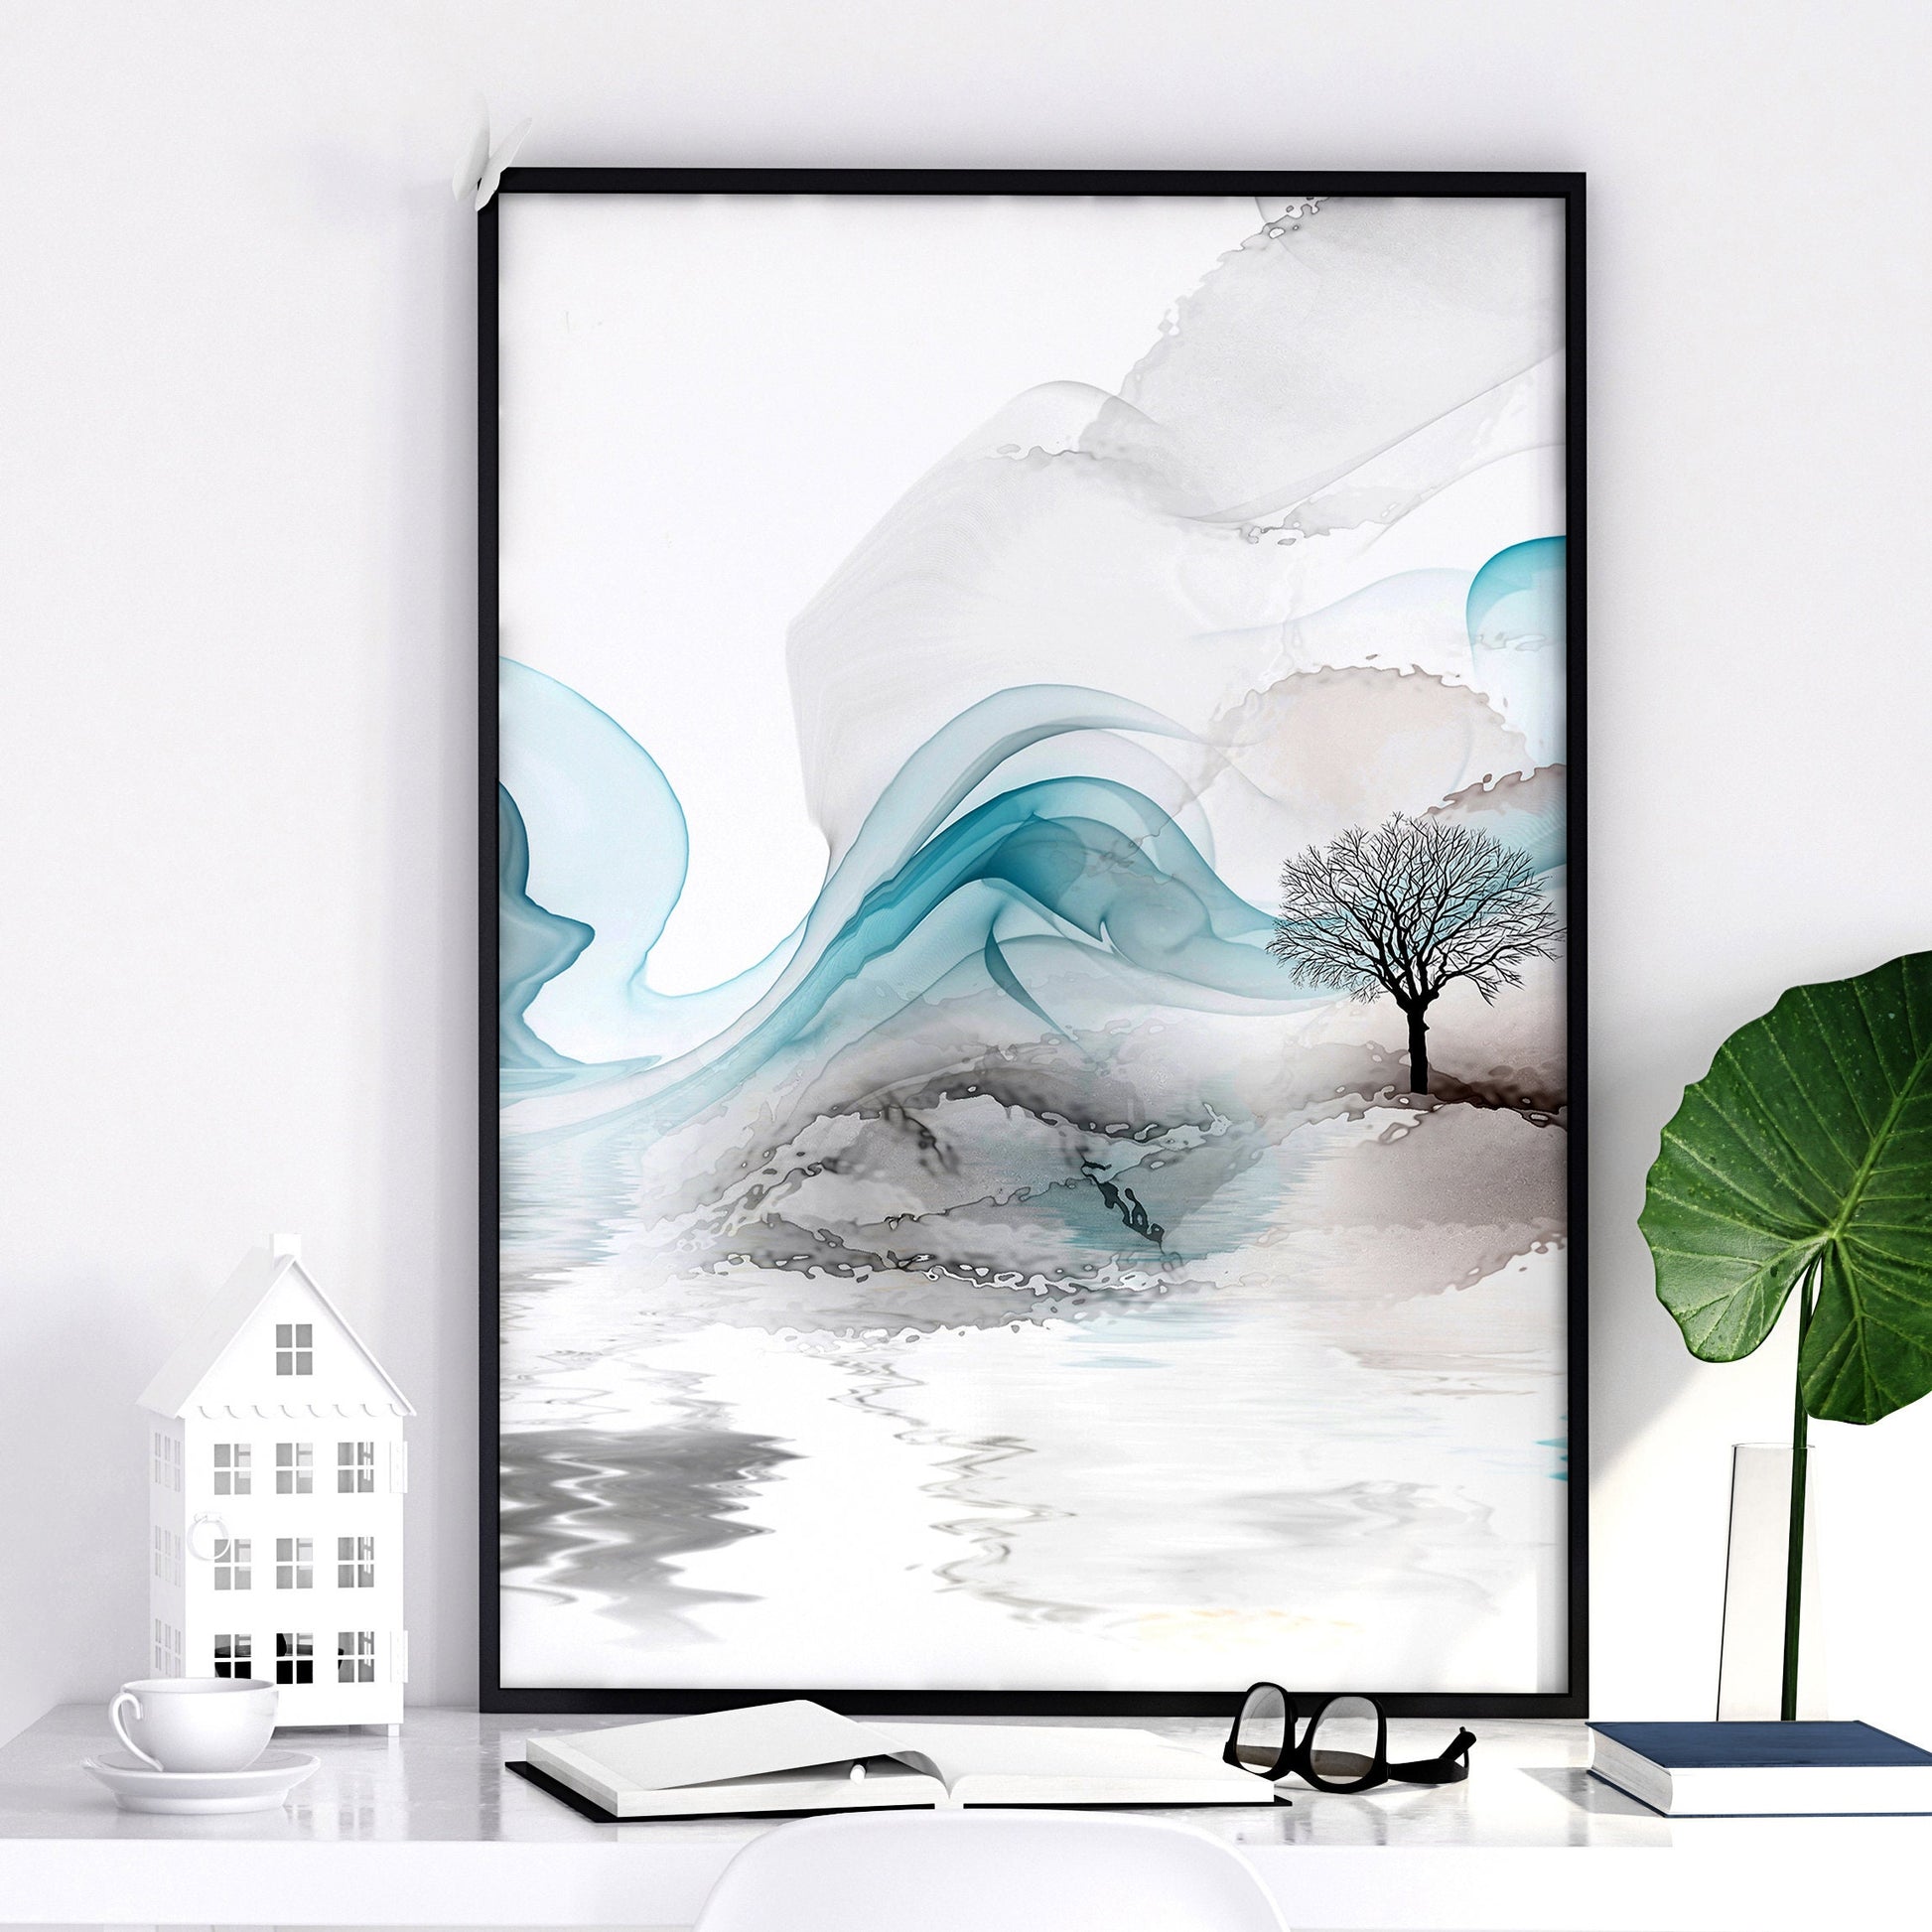 Zen wall decor | set of 3 wall art prints - About Wall Art